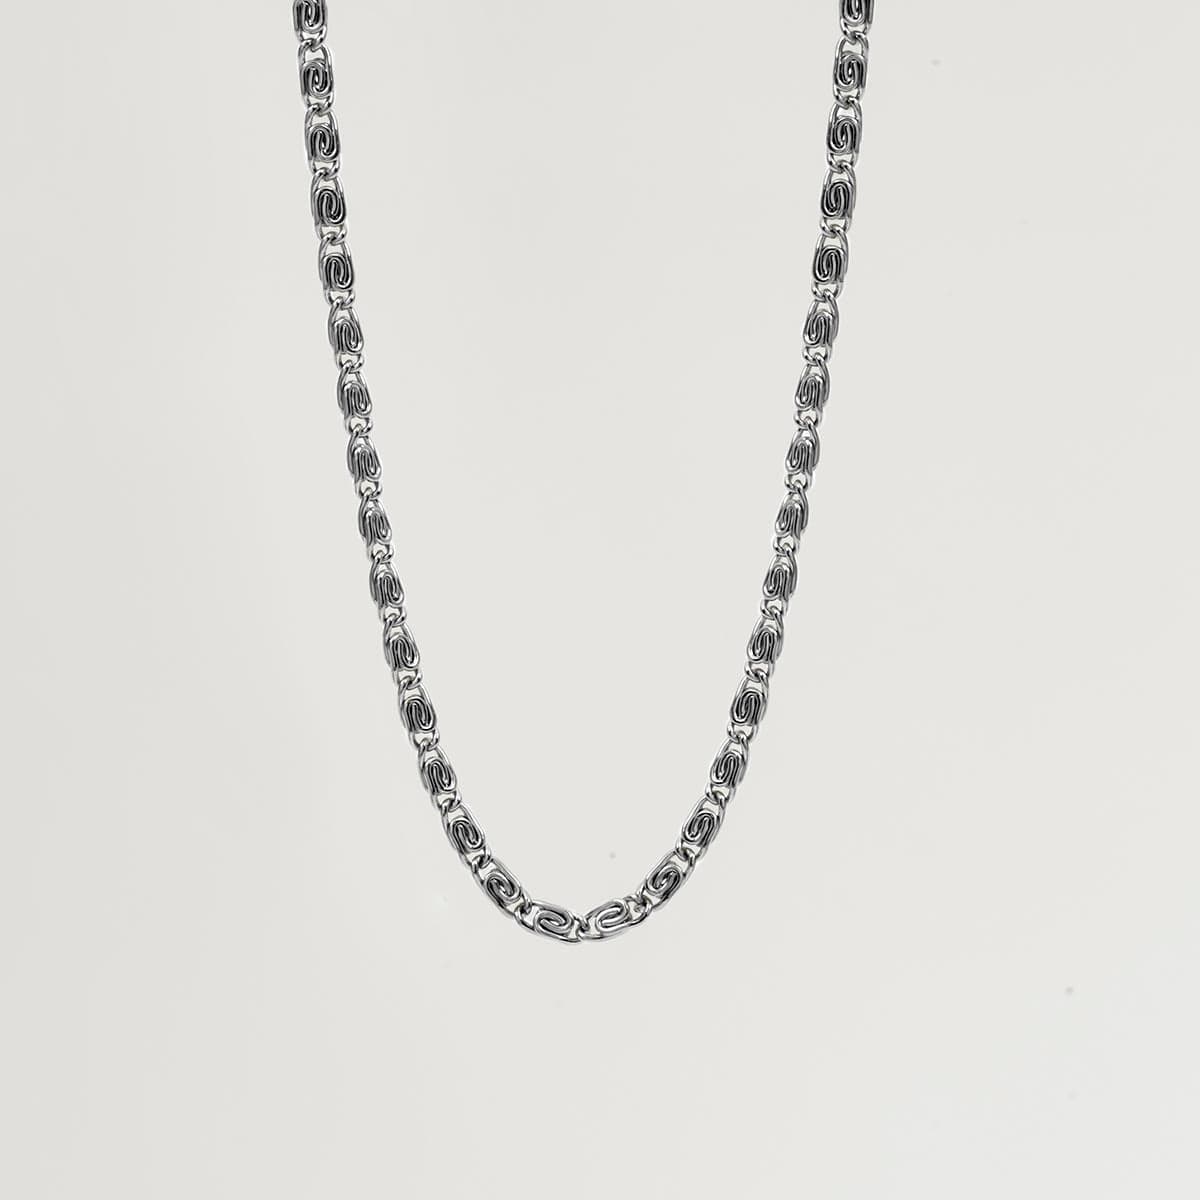 Twojeys necklaces Malibu chain